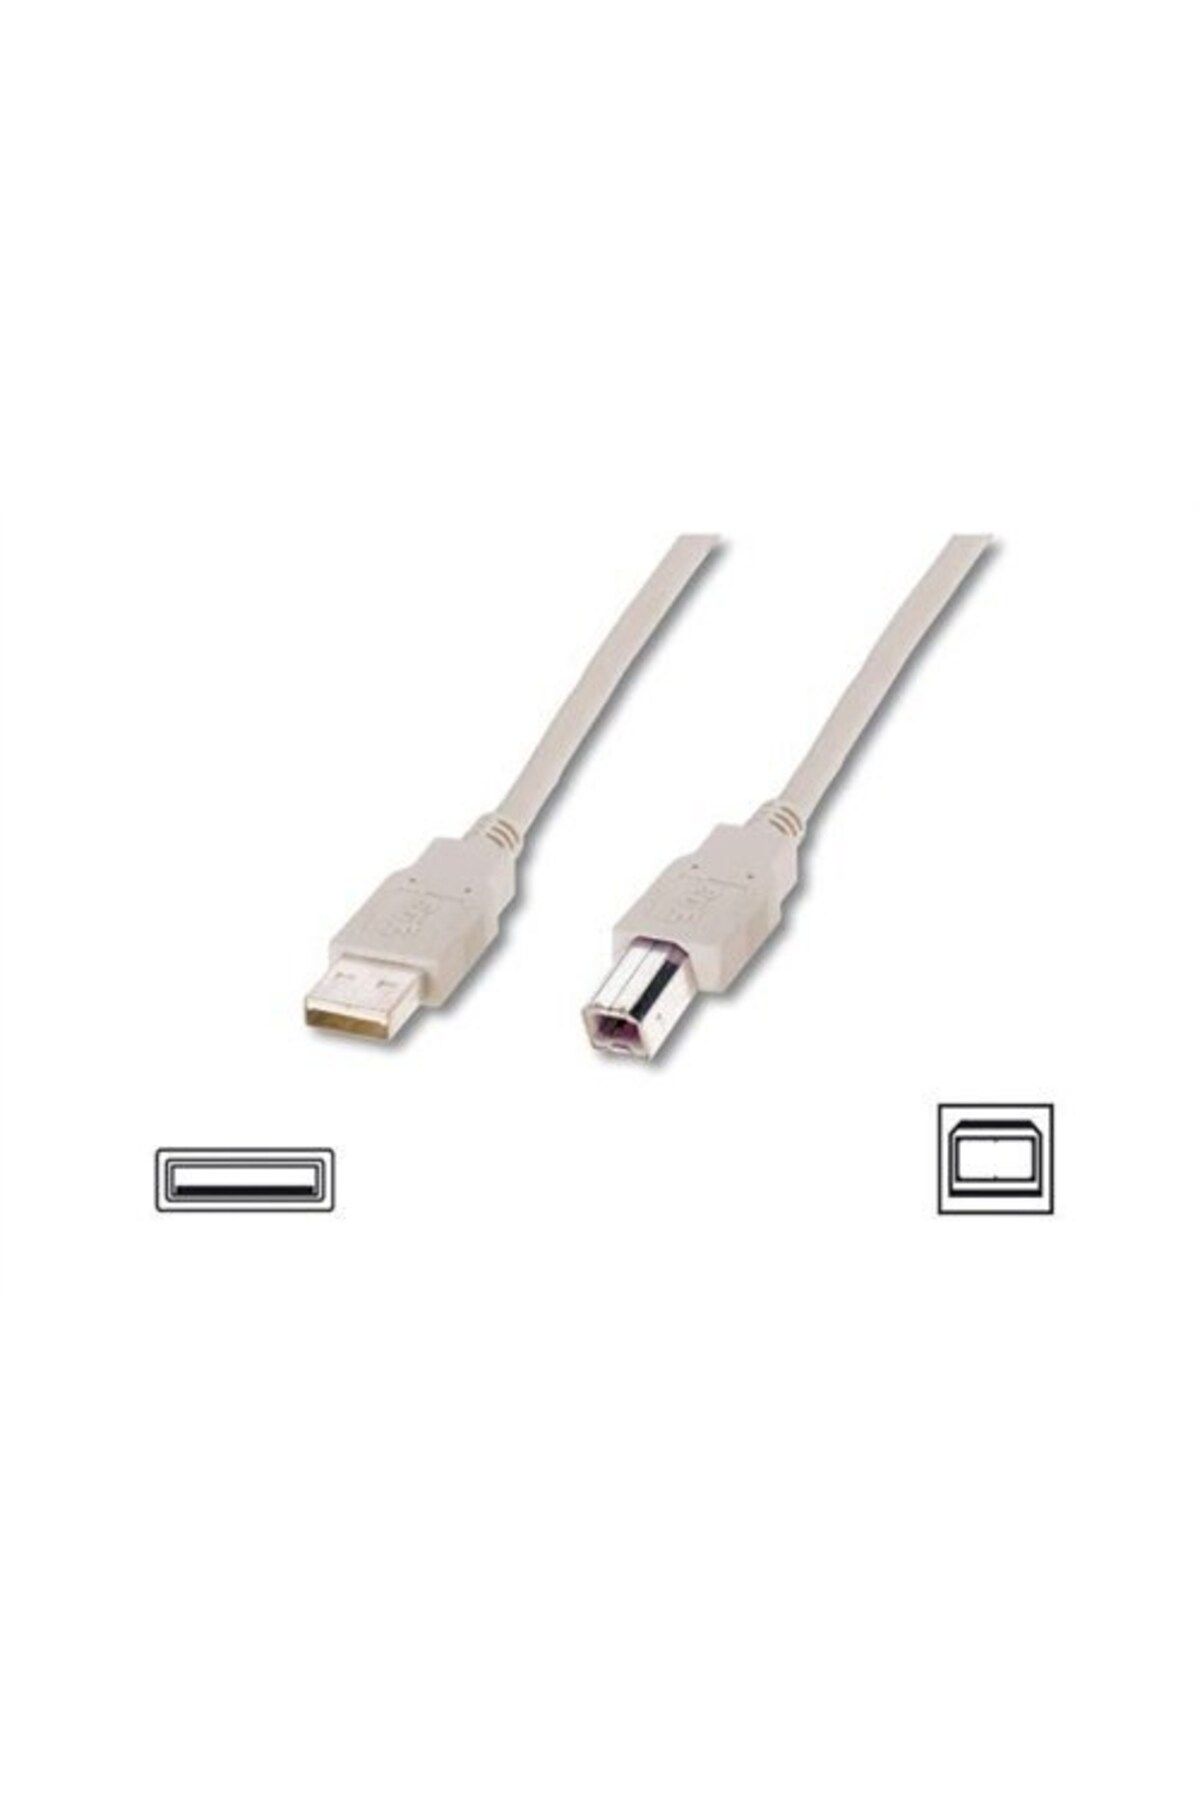 EmAyCenter 1,8 Metre USB 2.0 Yazıcı Kablosu